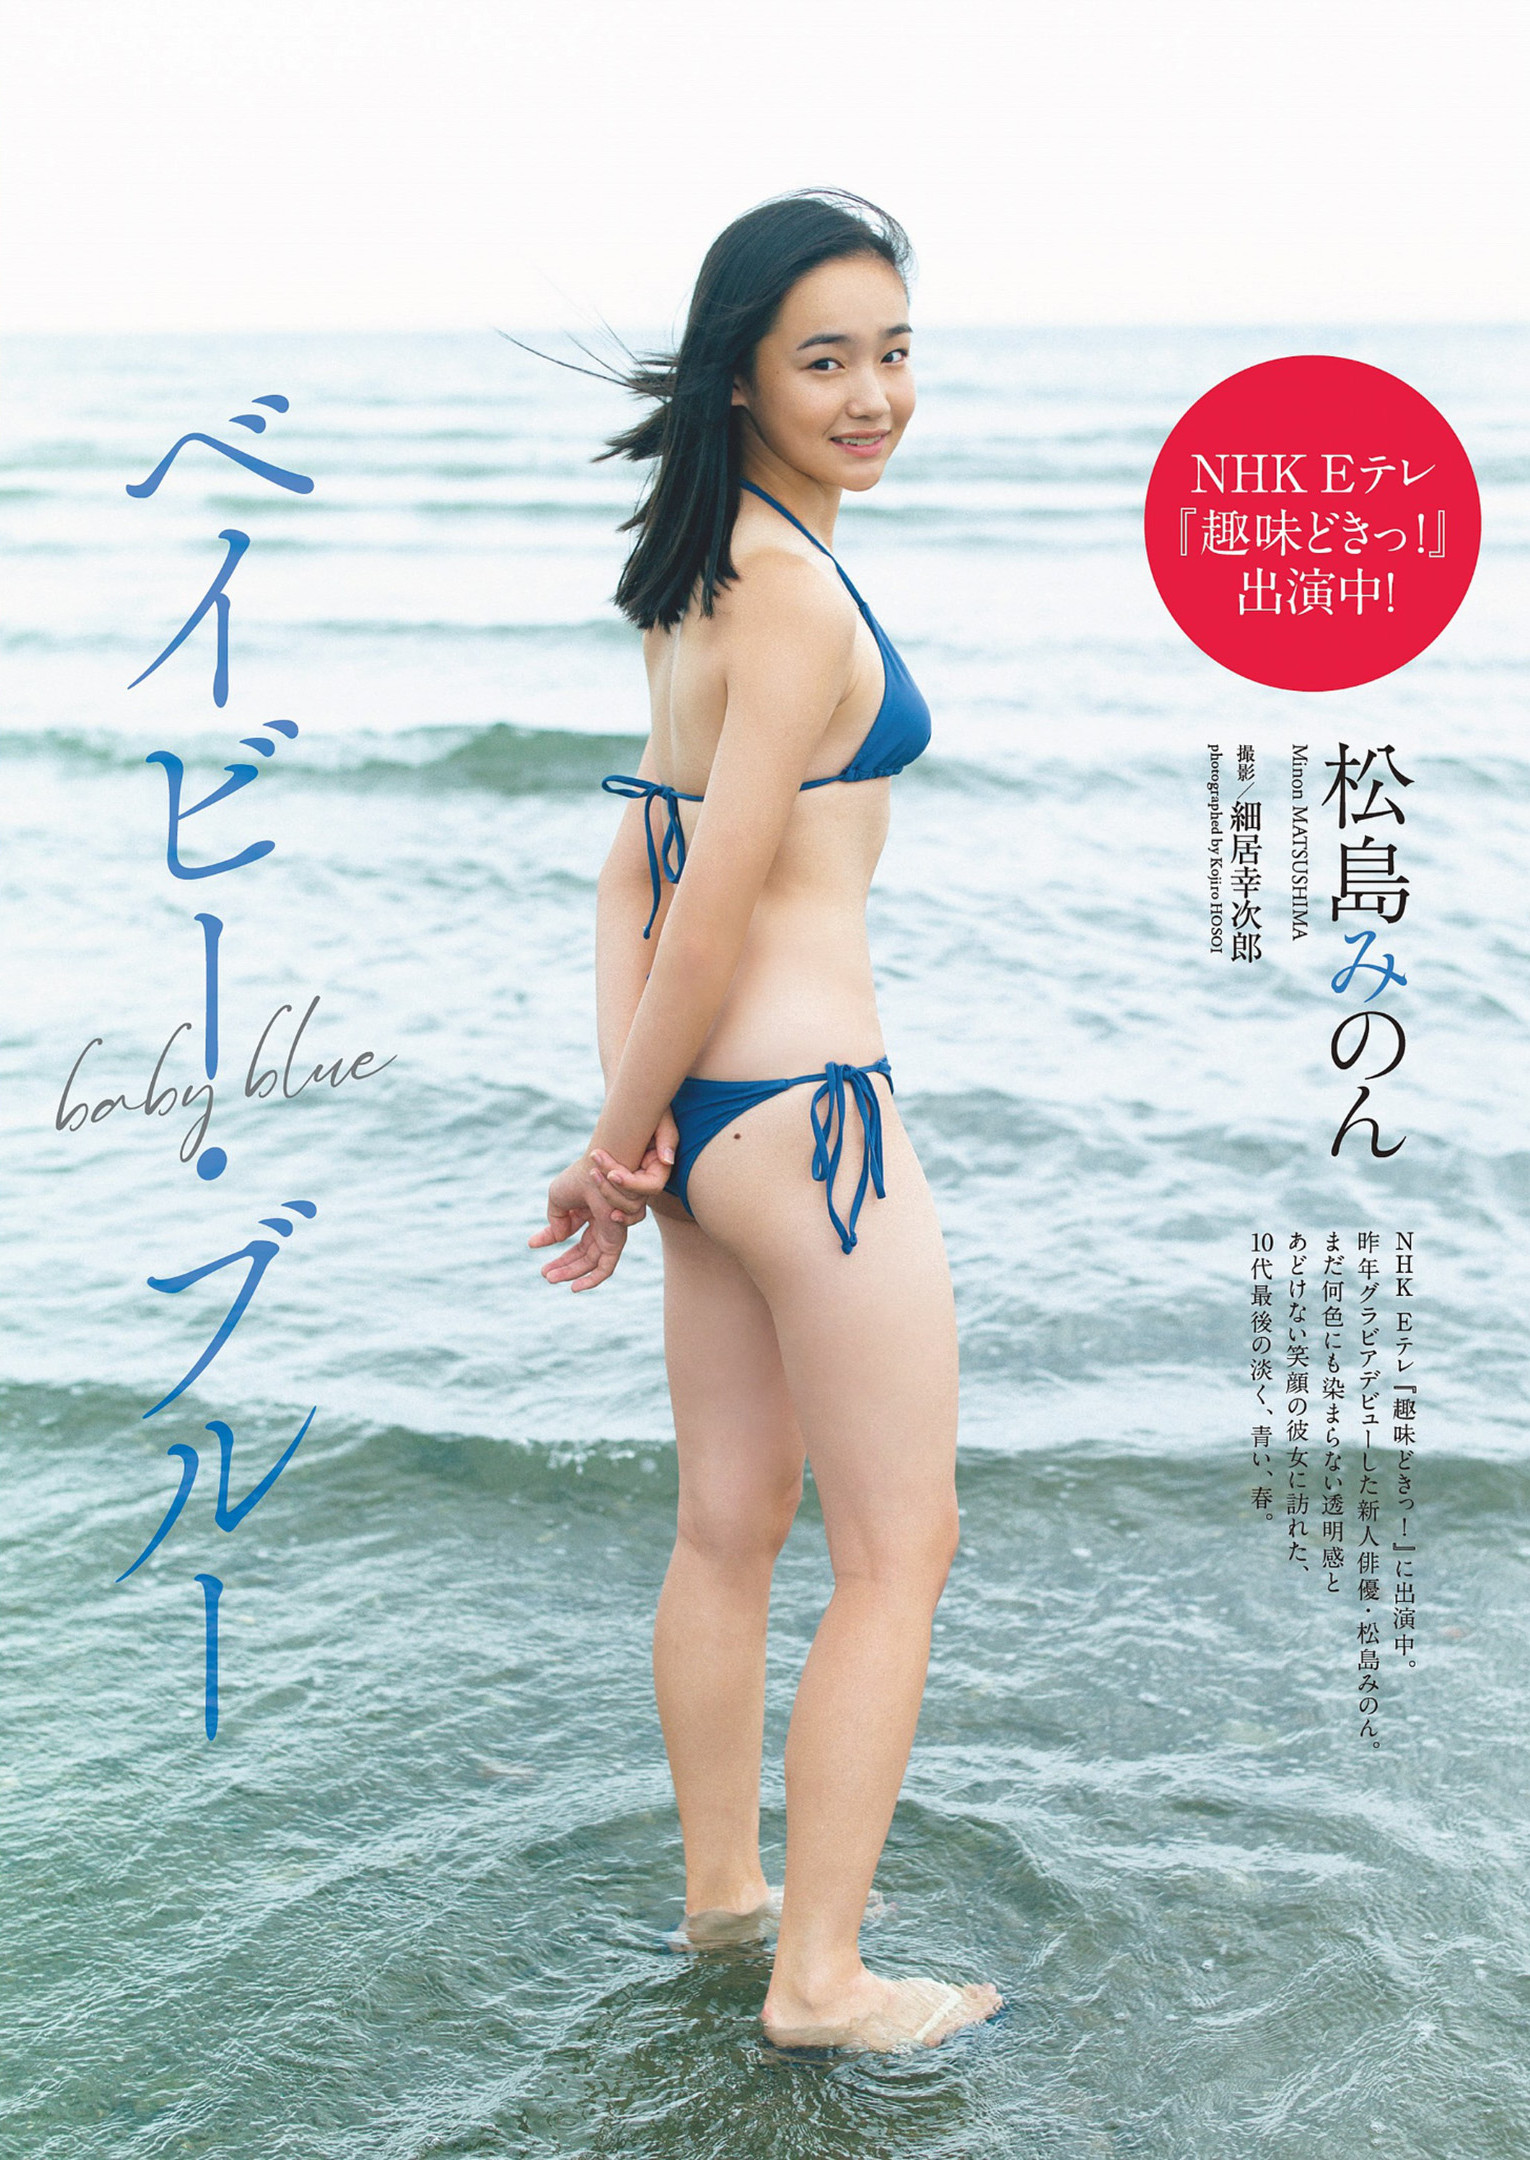 Minon Matsushima 松島みのん, Weekly Playboy 2023 No.18 (週刊プレイボーイ 2023年18号)